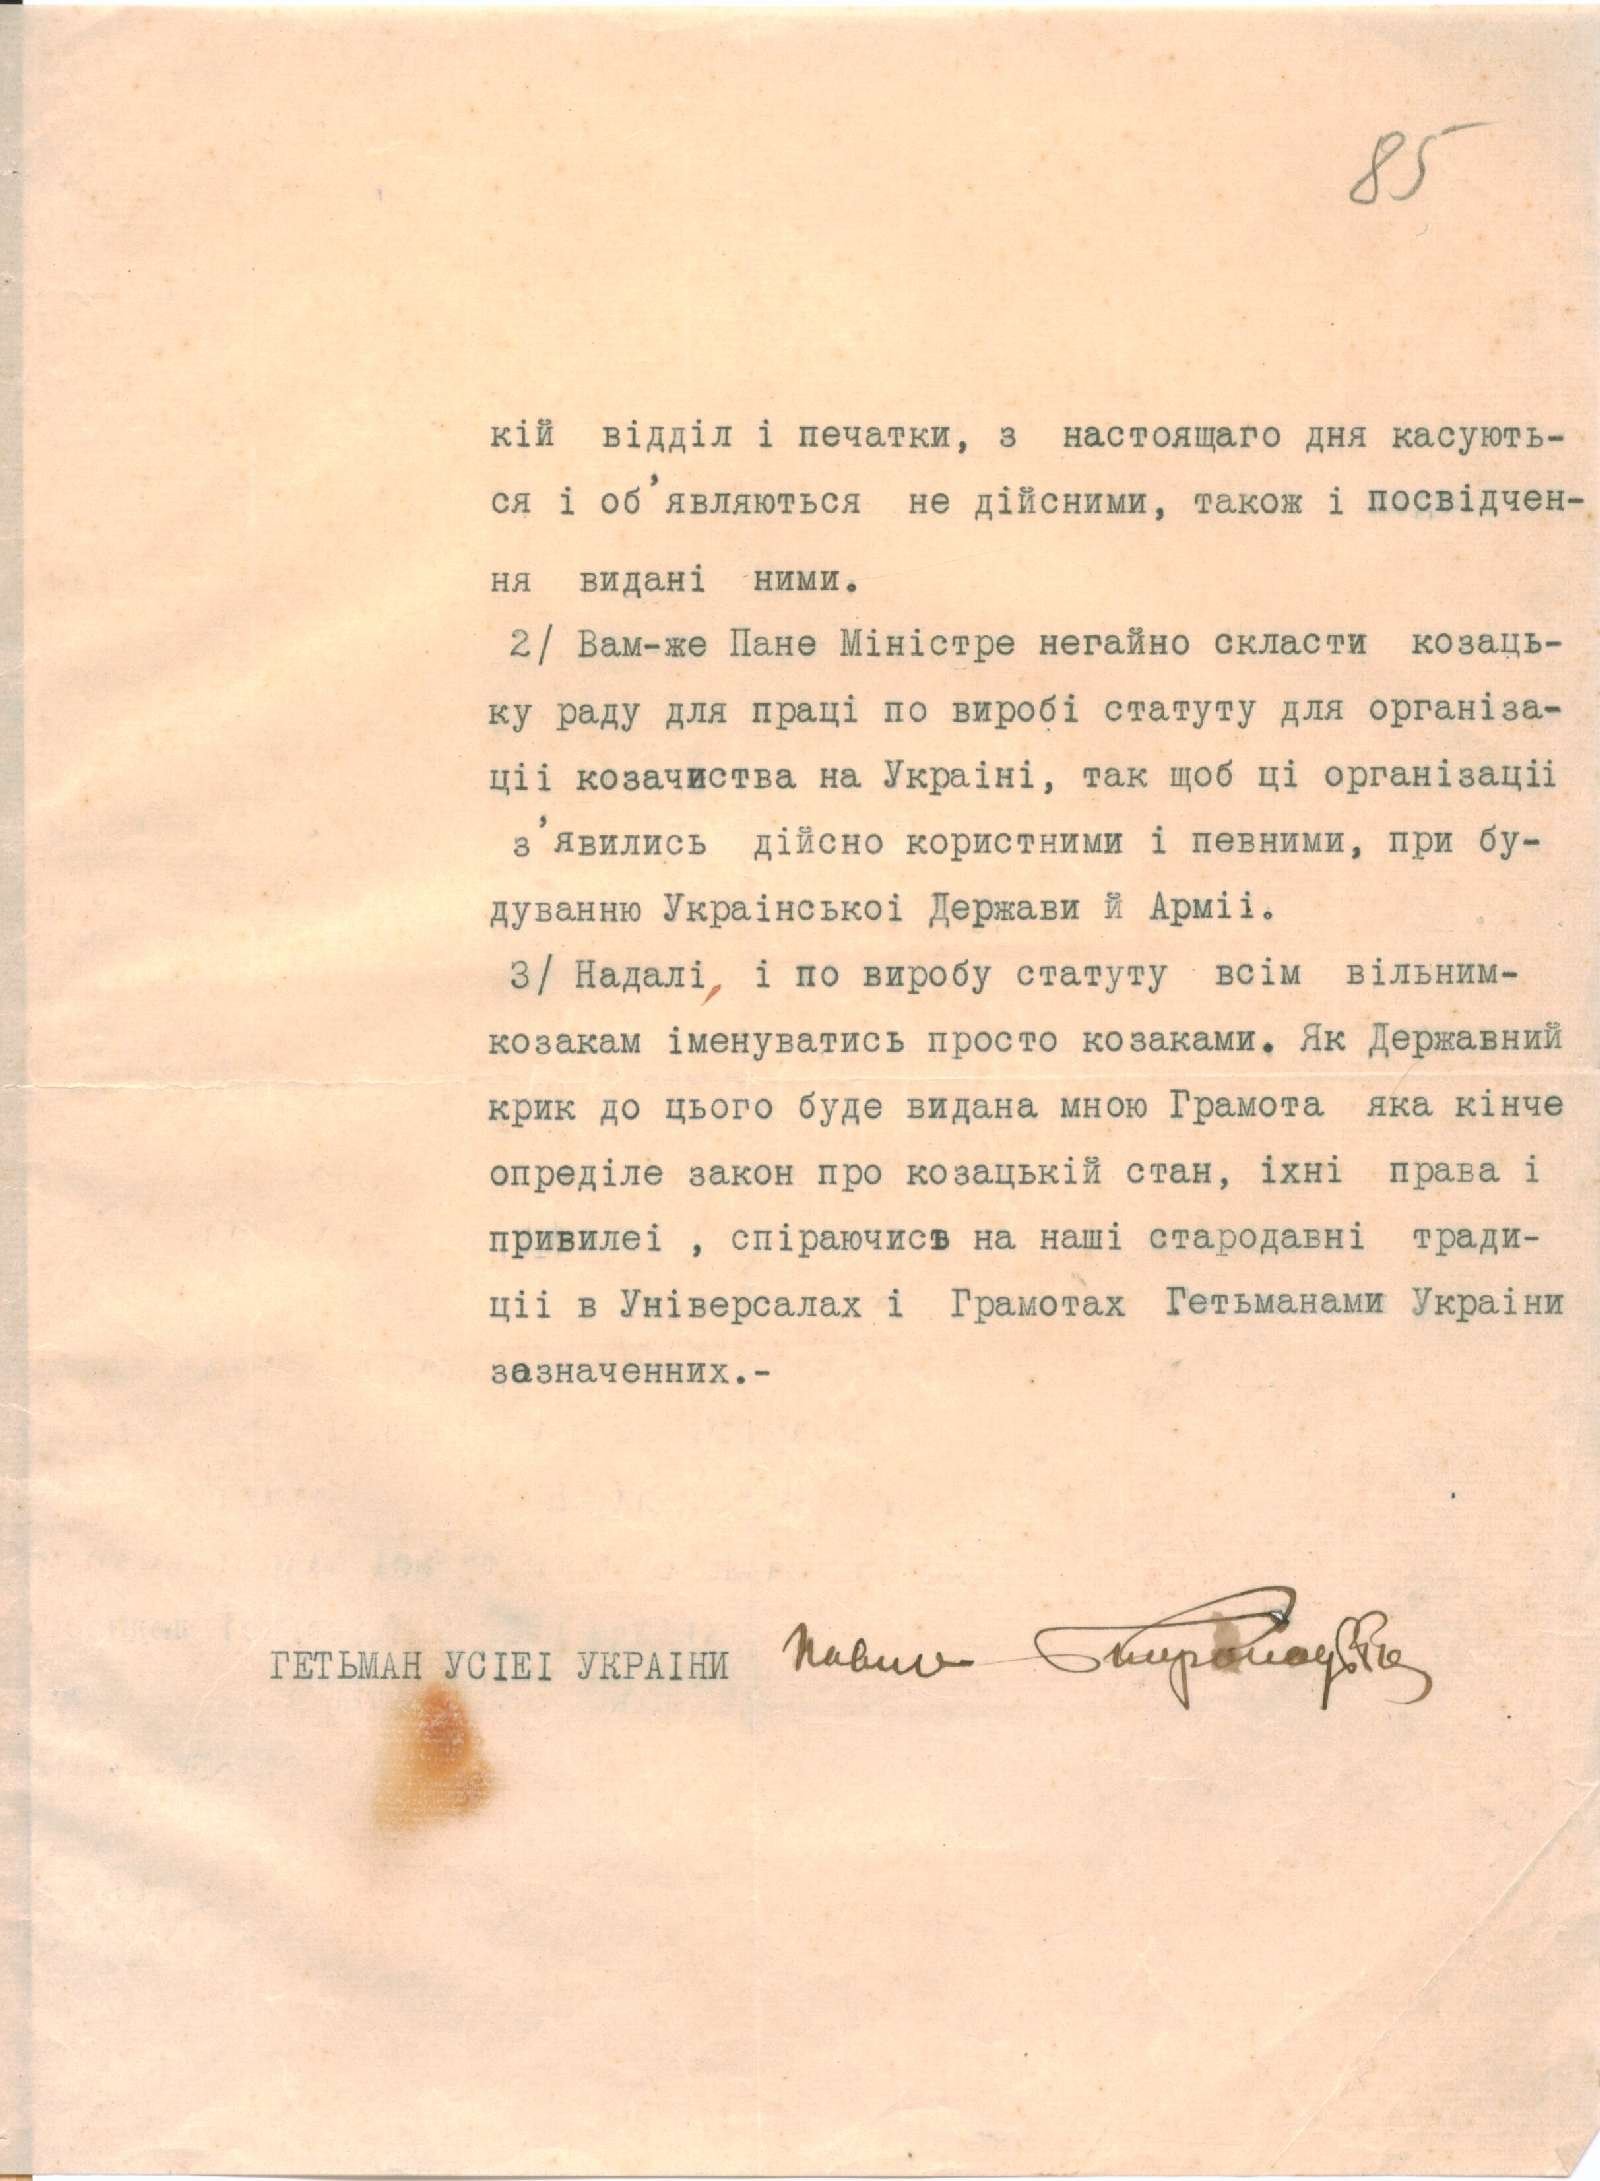 Лист гетьмана П. Скоропадського до Військового міністра про організацію козацтва в Україні. 30 травня 1918 р.